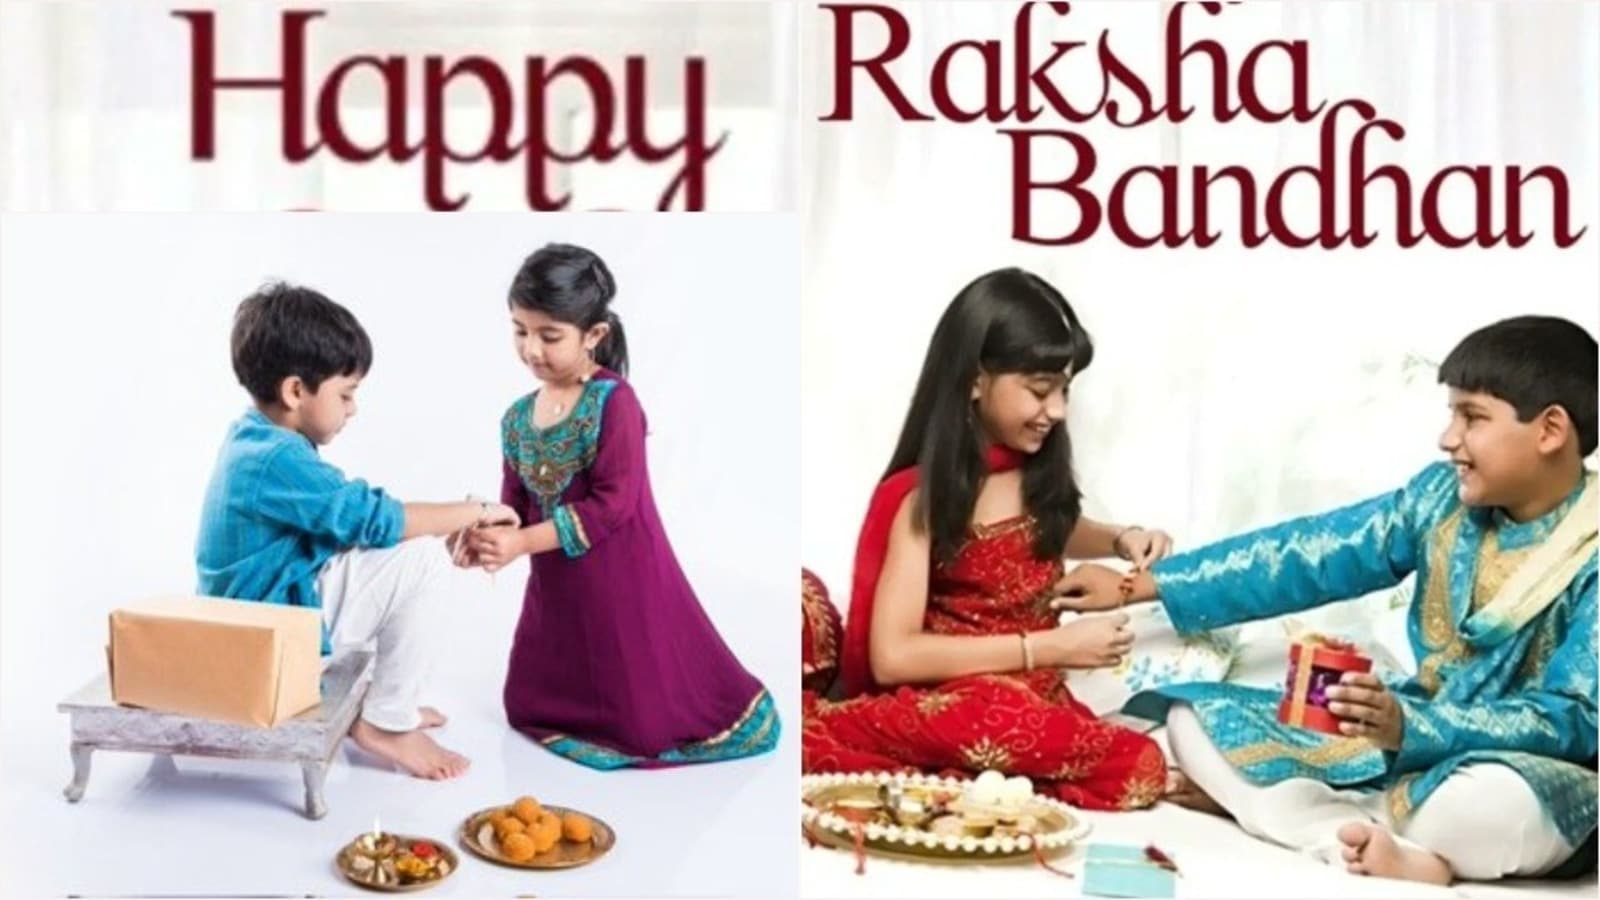 Raksha Bandhan 2021: Date, muhurat, history, celebration of Rakhi in India  - Hindustan Times